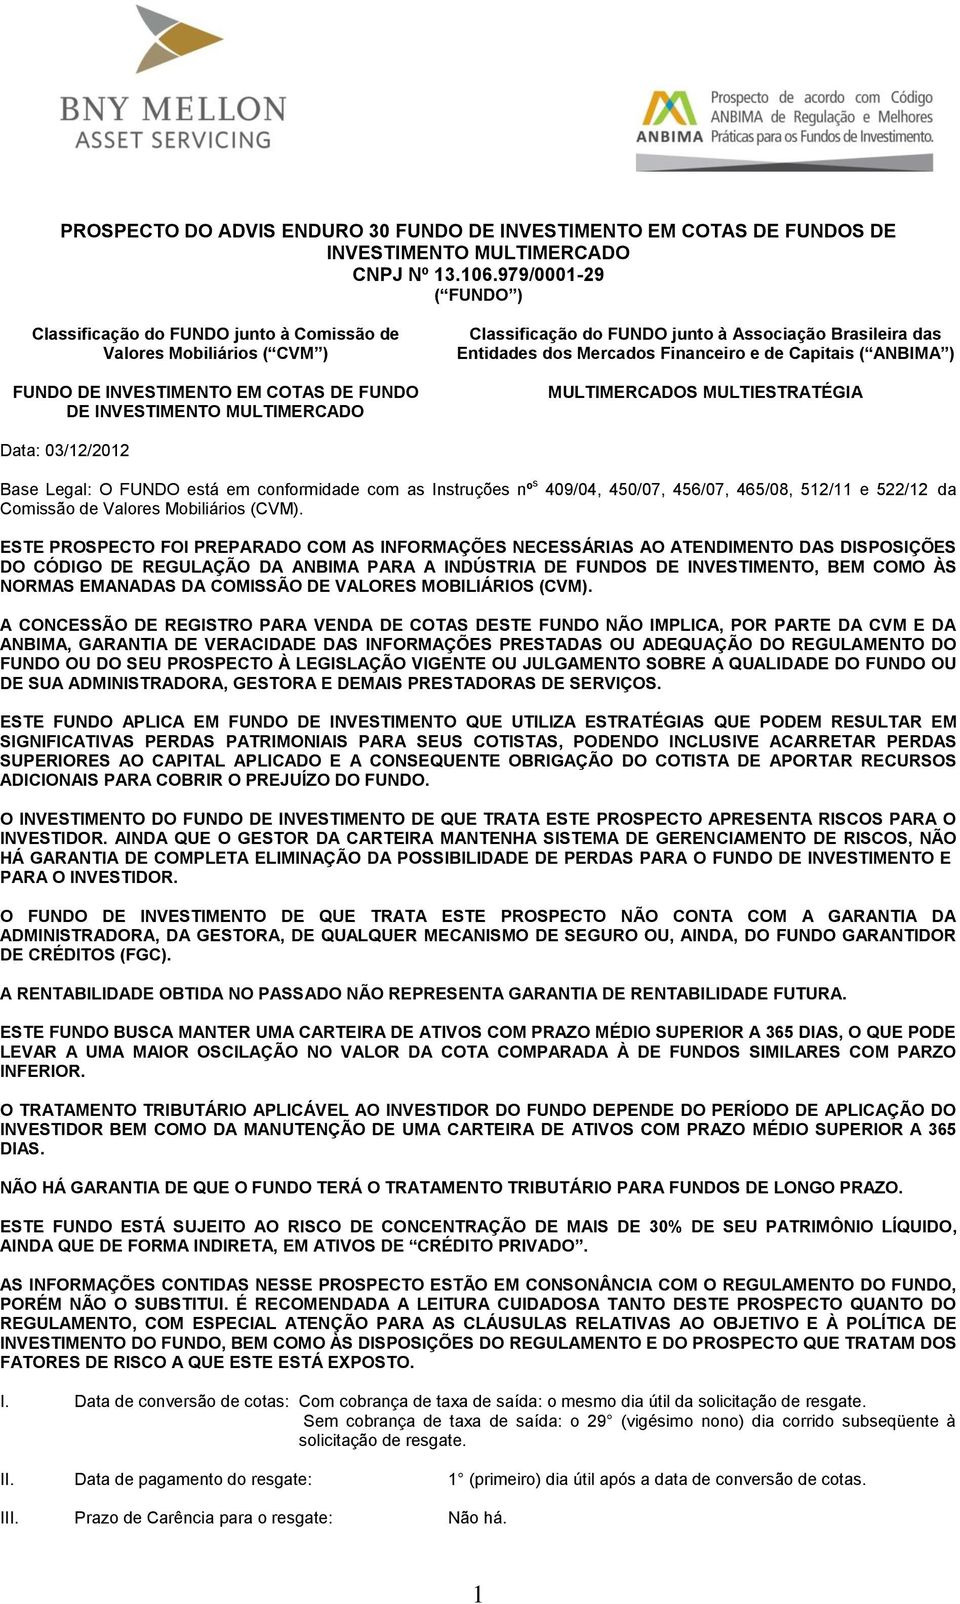 Associação Brasileira das Entidades dos Mercados Financeiro e de Capitais ( ANBIMA ) MULTIMERCADOS MULTIESTRATÉGIA Data: 03/12/2012 Base Legal: O FUNDO está em conformidade com as Instruções nº s